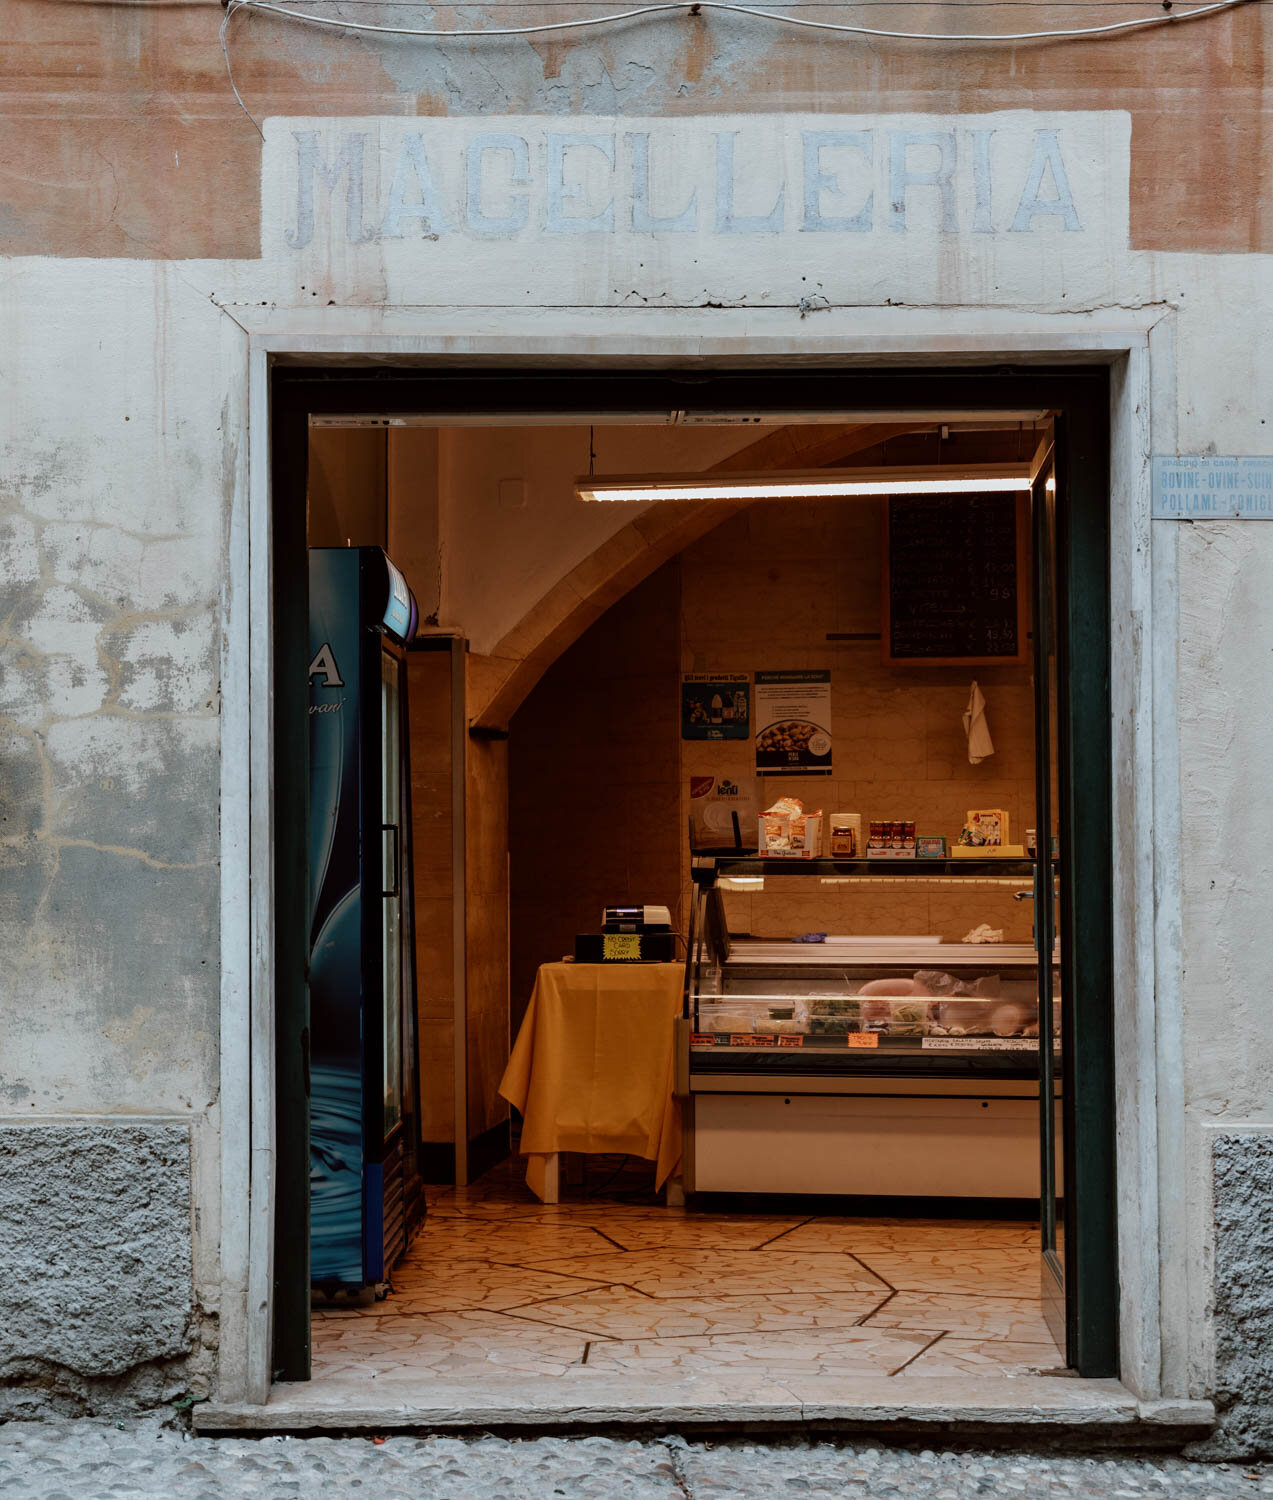 Maccelleria - Monterosso